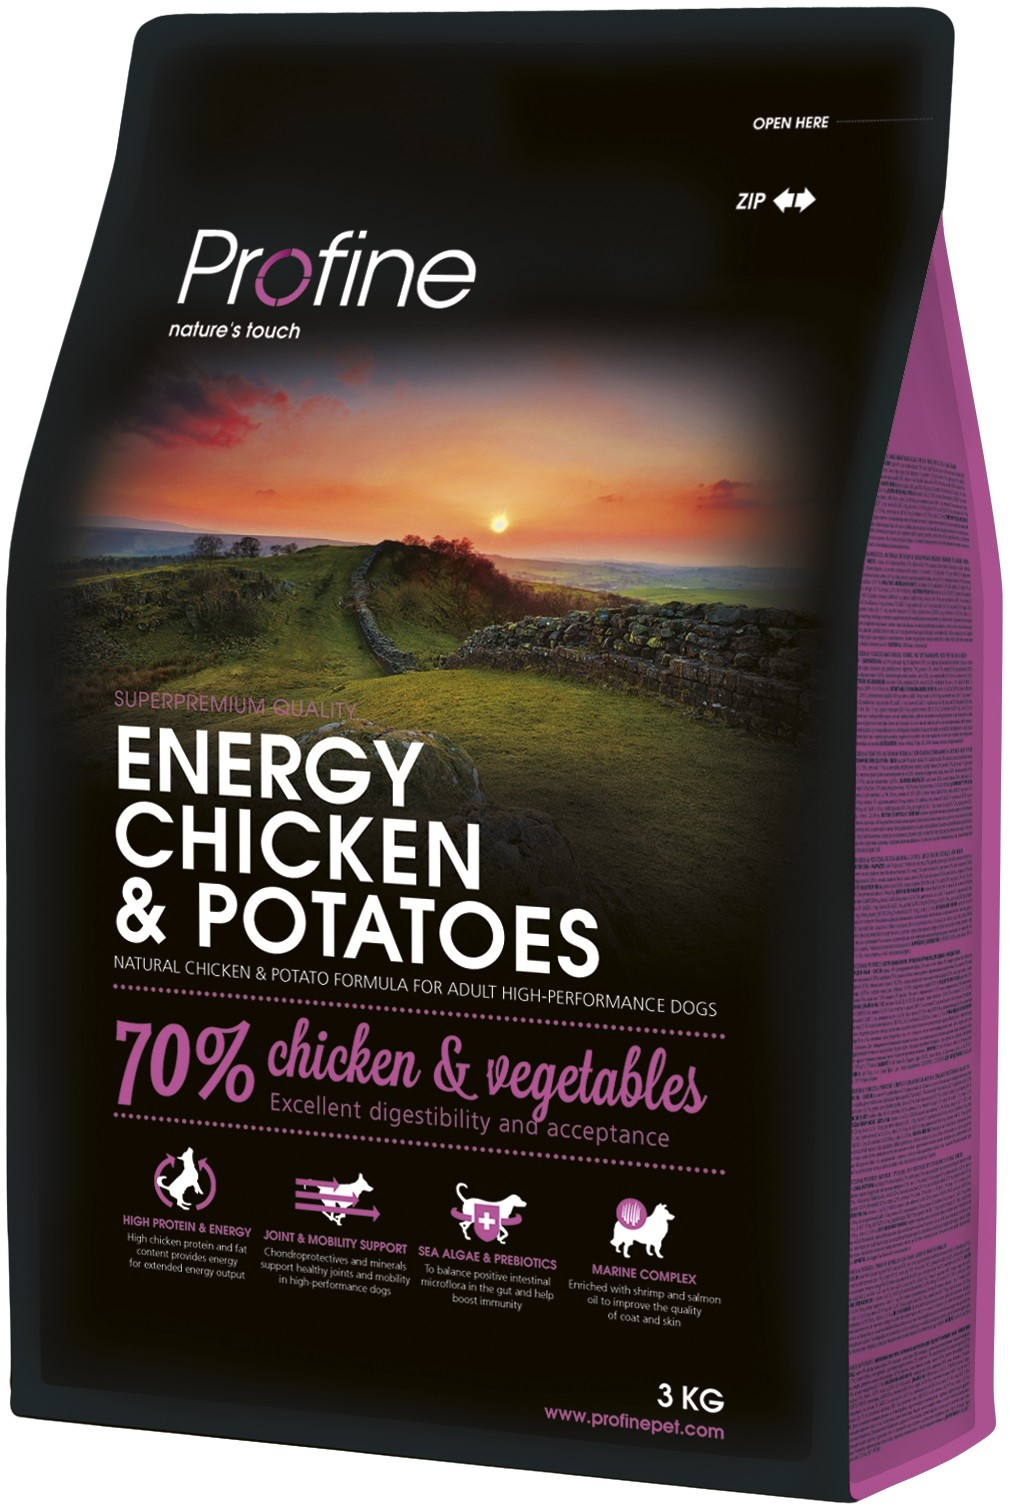 Profine Energy chicken & potatoes